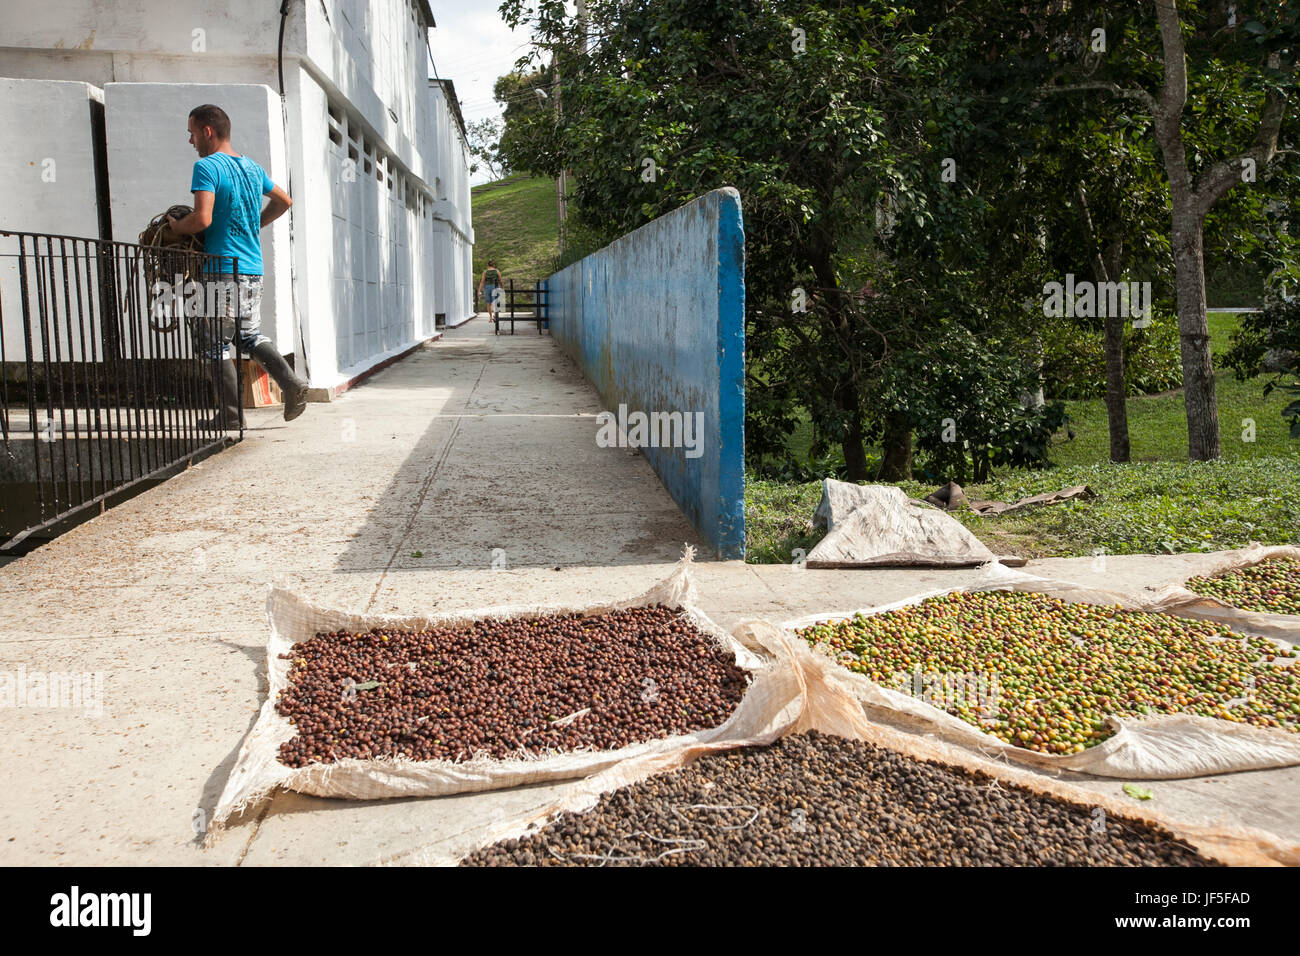 Une mission de la communauté à l'extérieur de La Havane, les grains de café sécher au soleil. Banque D'Images